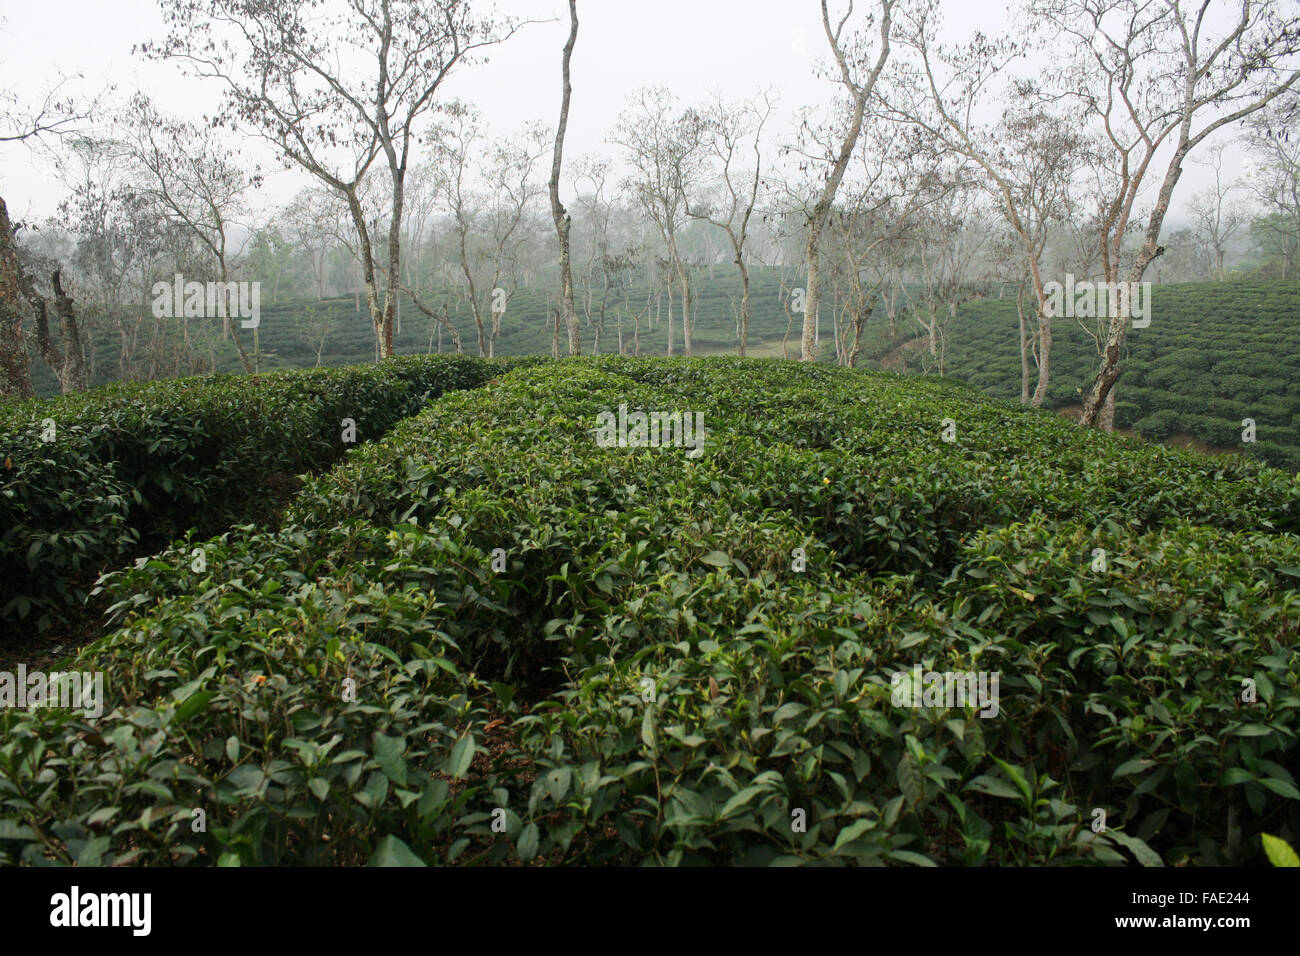 A Tea garden at Jaflong in Sylhet, Bangladesh Stock Photo